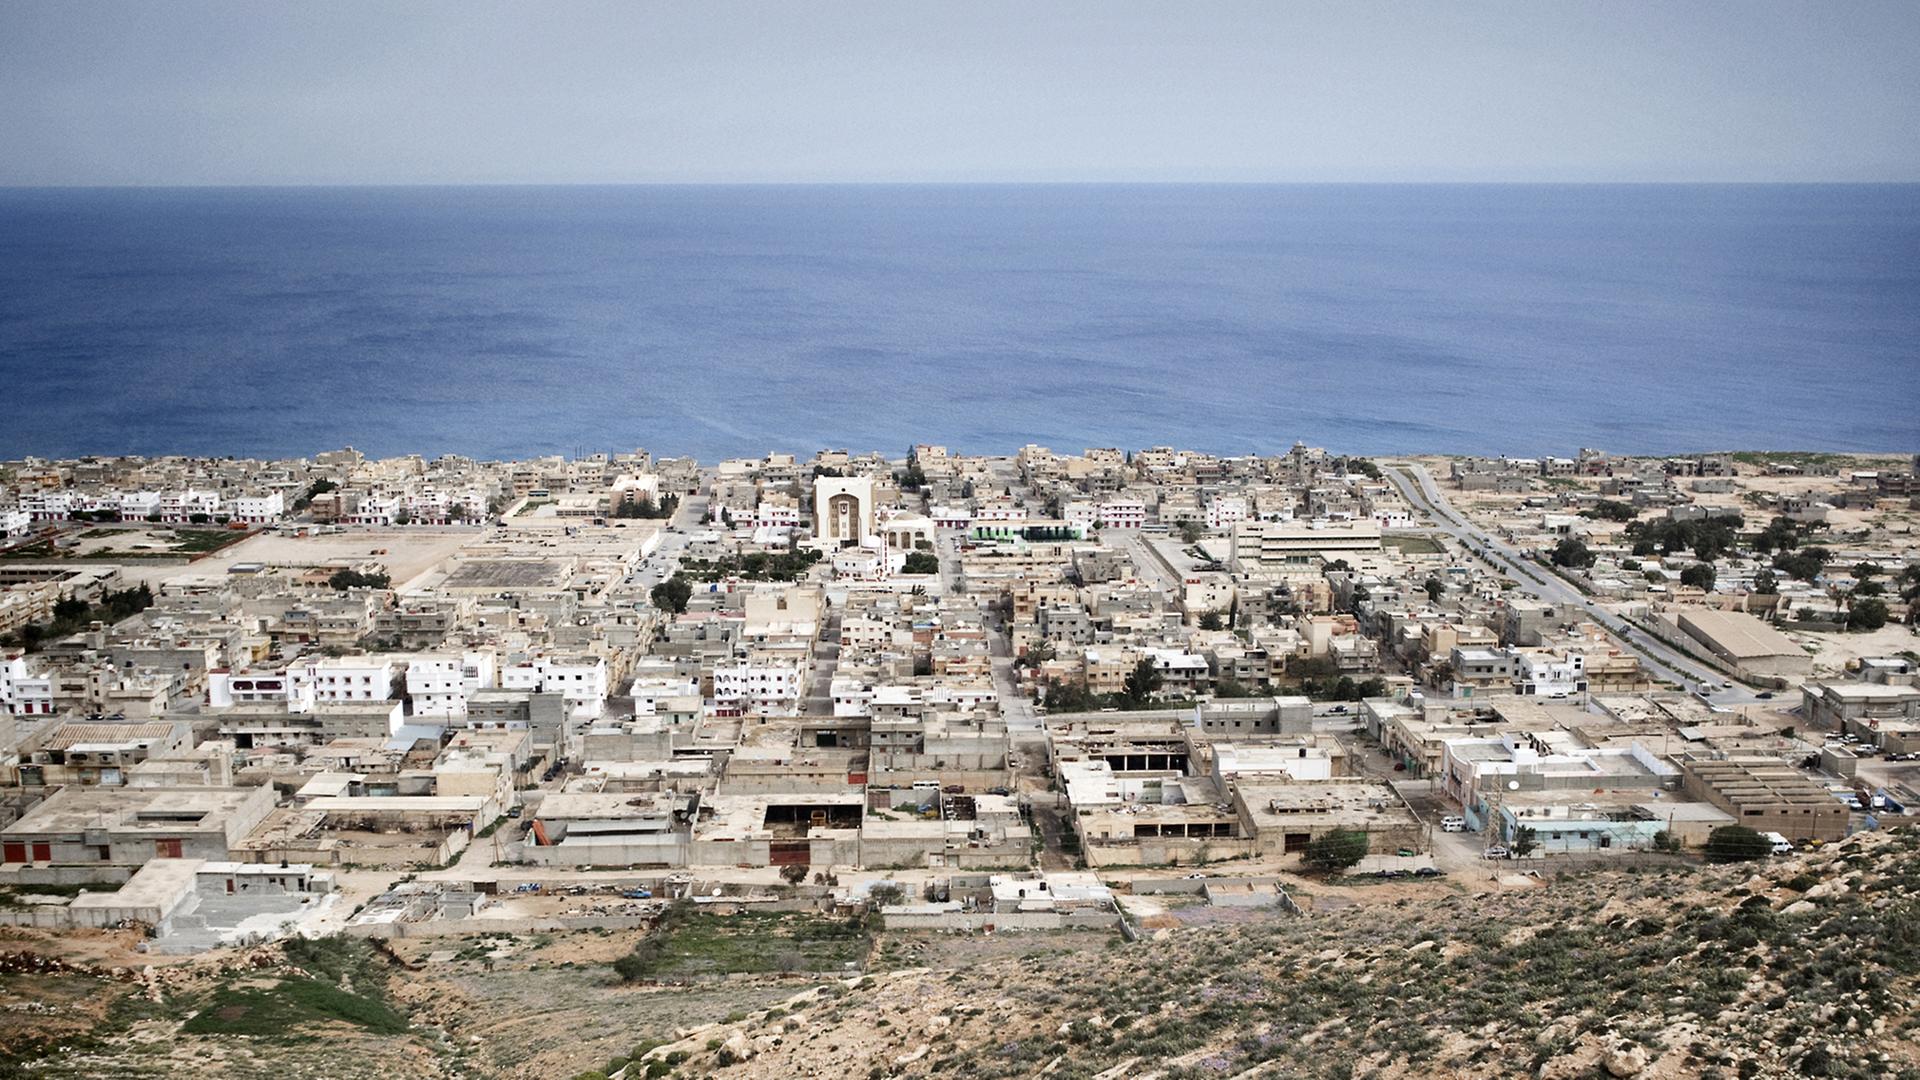 Blick von oben auf die libysche Küstenstadt Derna, dahinter das Mittelmeer.